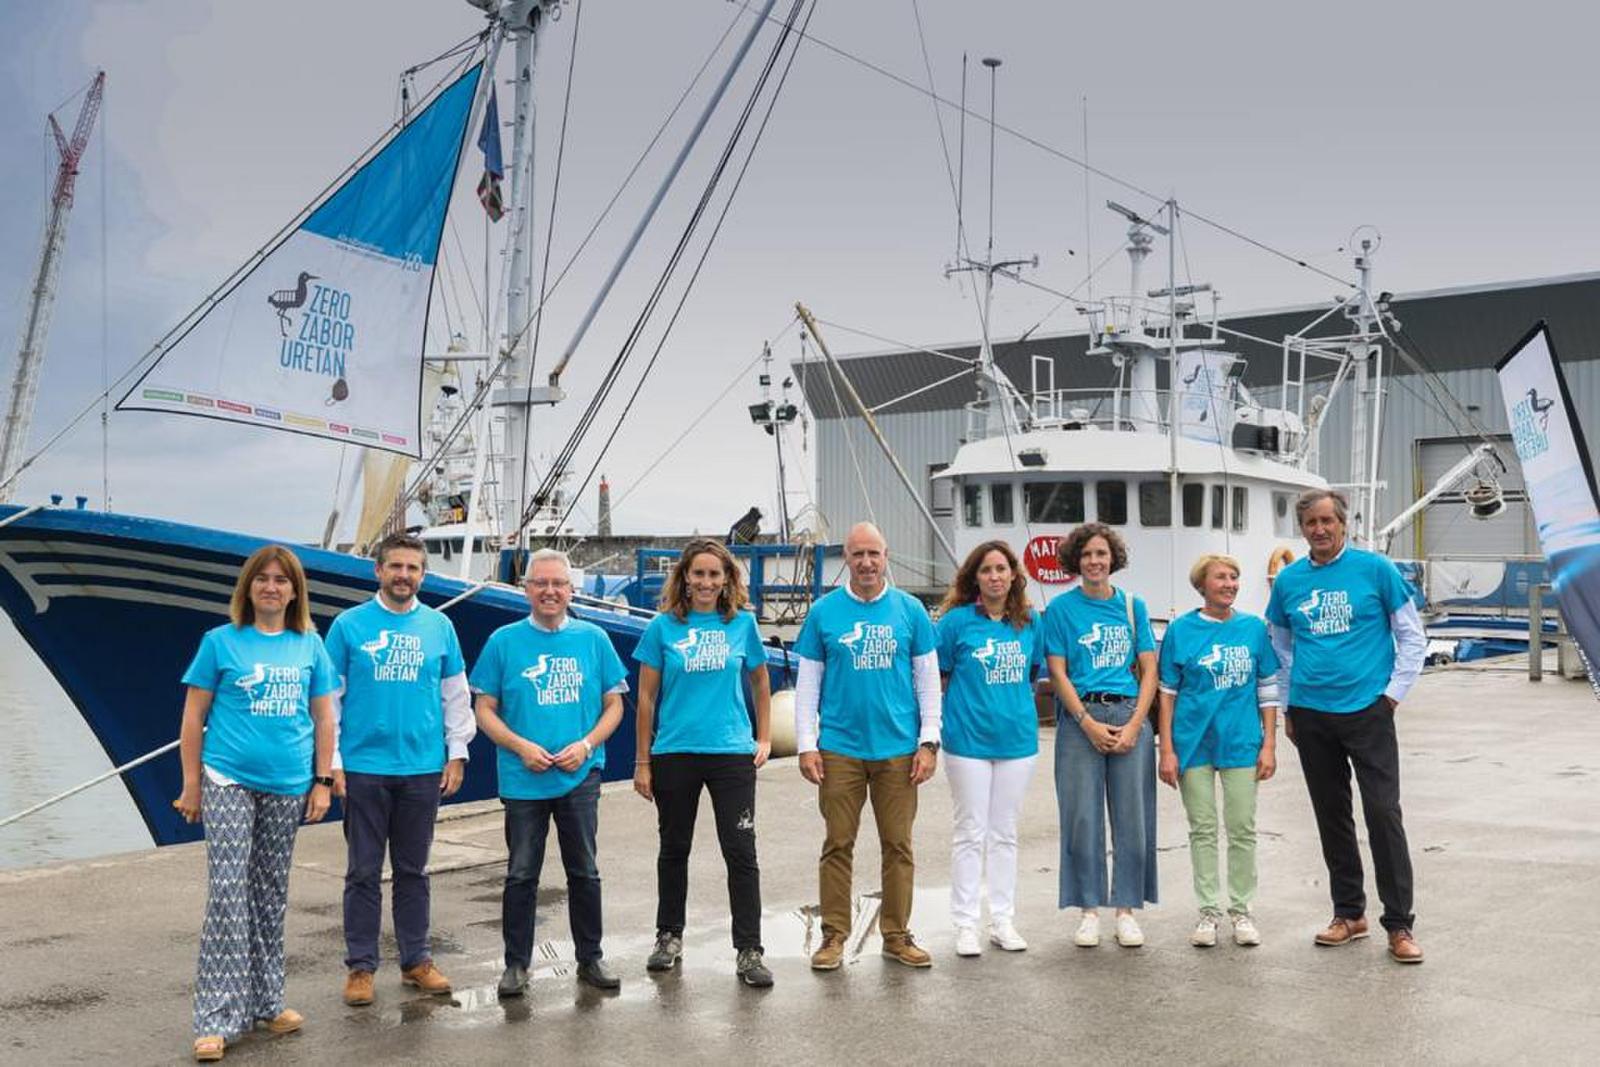 La campaña ZERO ZABOR URETAN vuelve a recorrer los puertos de Euskadi a bordo del barco-museo MATER para sensibilizar sobre la contaminación marina